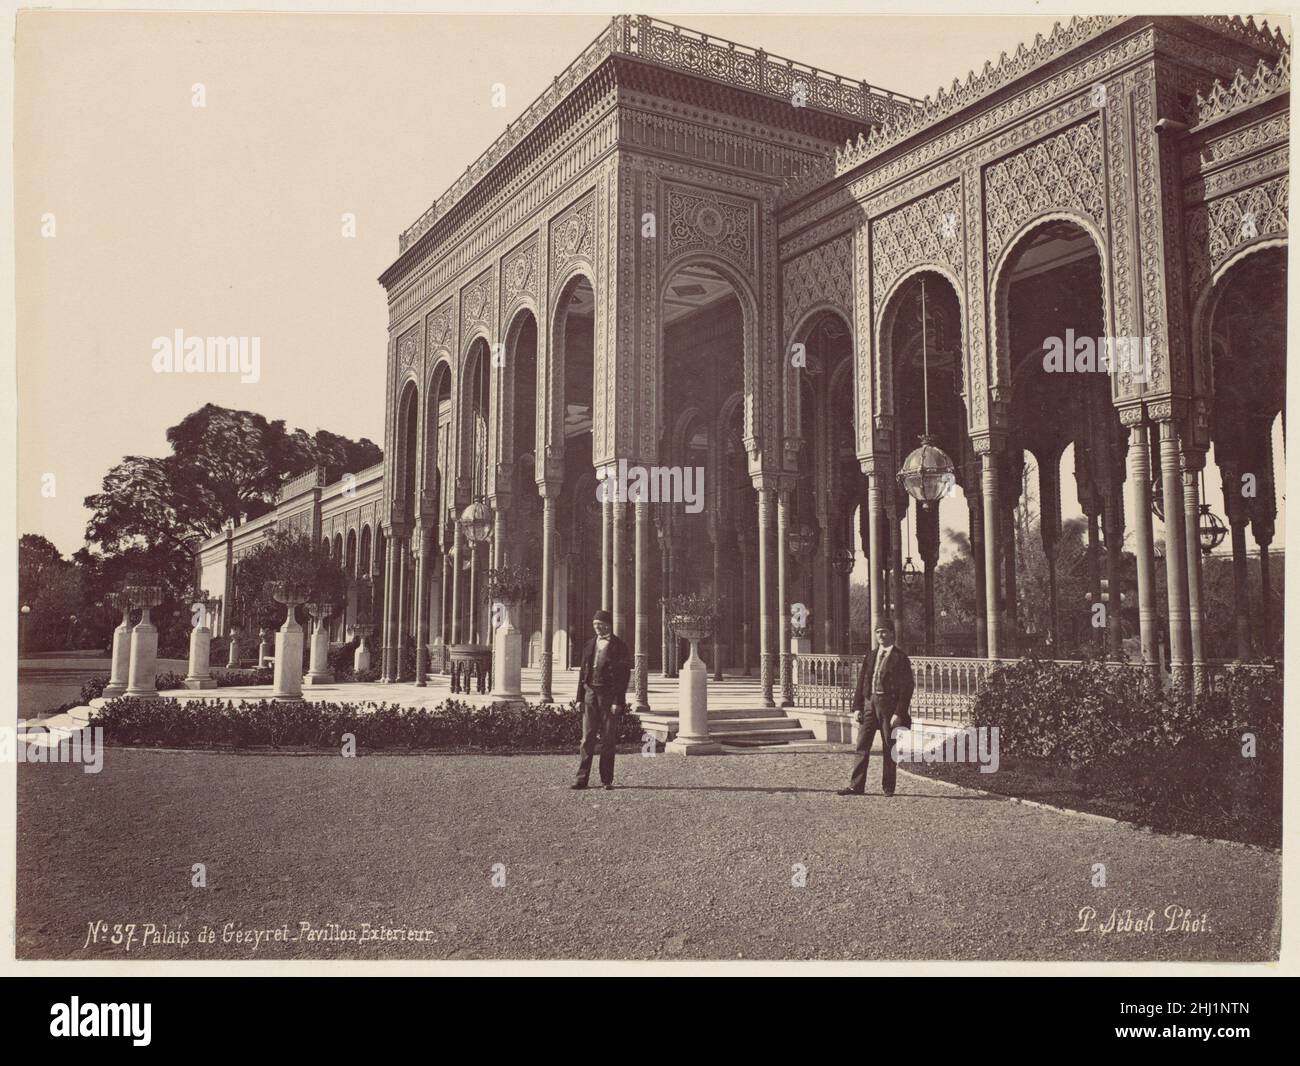 Palais de Gézyret, Pavillon Exterieur 1870s J. Pascal Sébah Turco il Palazzo Gezira sorge sull'omonima isola situata nel fiume Nilo nel centro del Cairo. L'isola fu sviluppata per la prima volta con giardini lussureggianti e un palazzo estivo dal khedive Ismacil (r. 1863-79), e lo scelse anche come sede di questo palazzo costruito per ospitare l'imperatrice Eugénie di Francia per la grande apertura del canale di Suez nel 1869. In seguito, ospiterà anche ospiti statali come il Principe e la Principessa di Galles e l'imperatore Francesco Giuseppe d'Austria-Ungheria. La costruzione del palazzo durò molti anni e invol Foto Stock